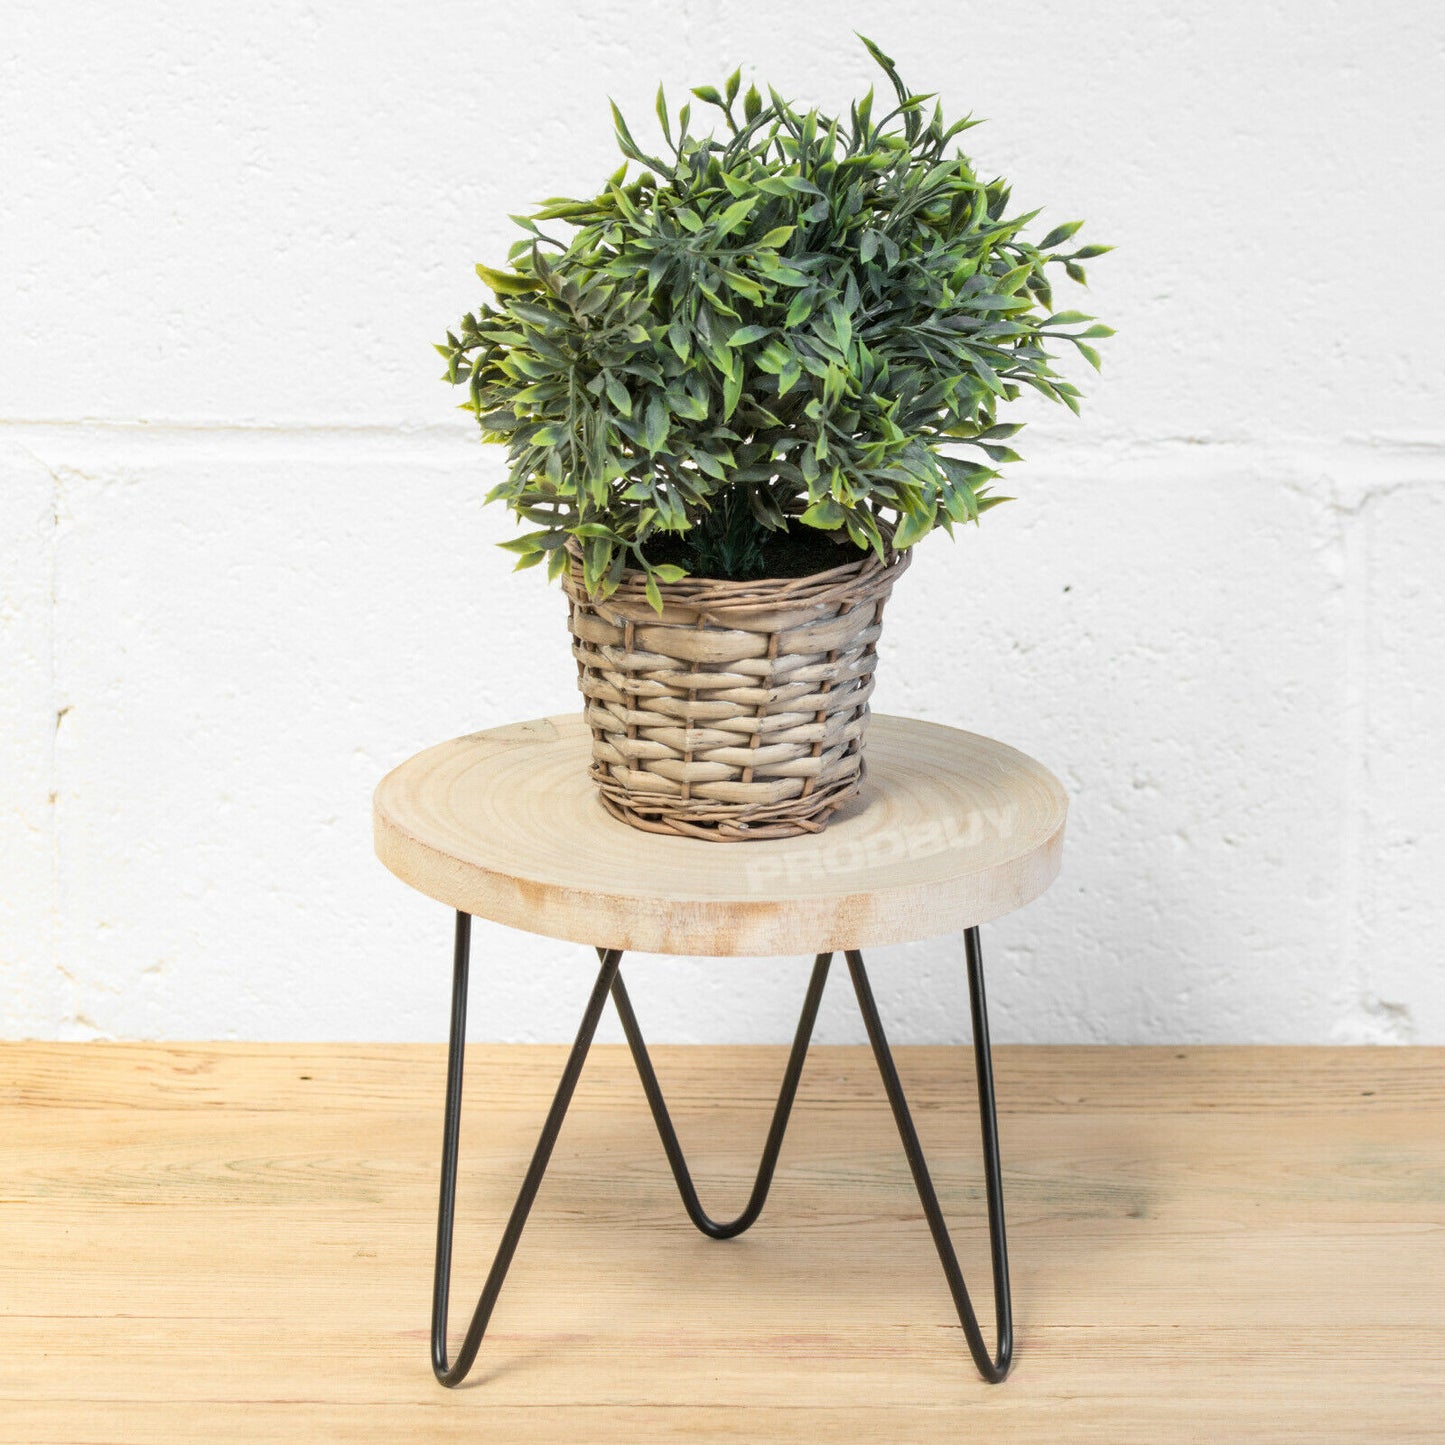 22cm Wooden Metal Legs Indoor Flower Plant Pot Stand